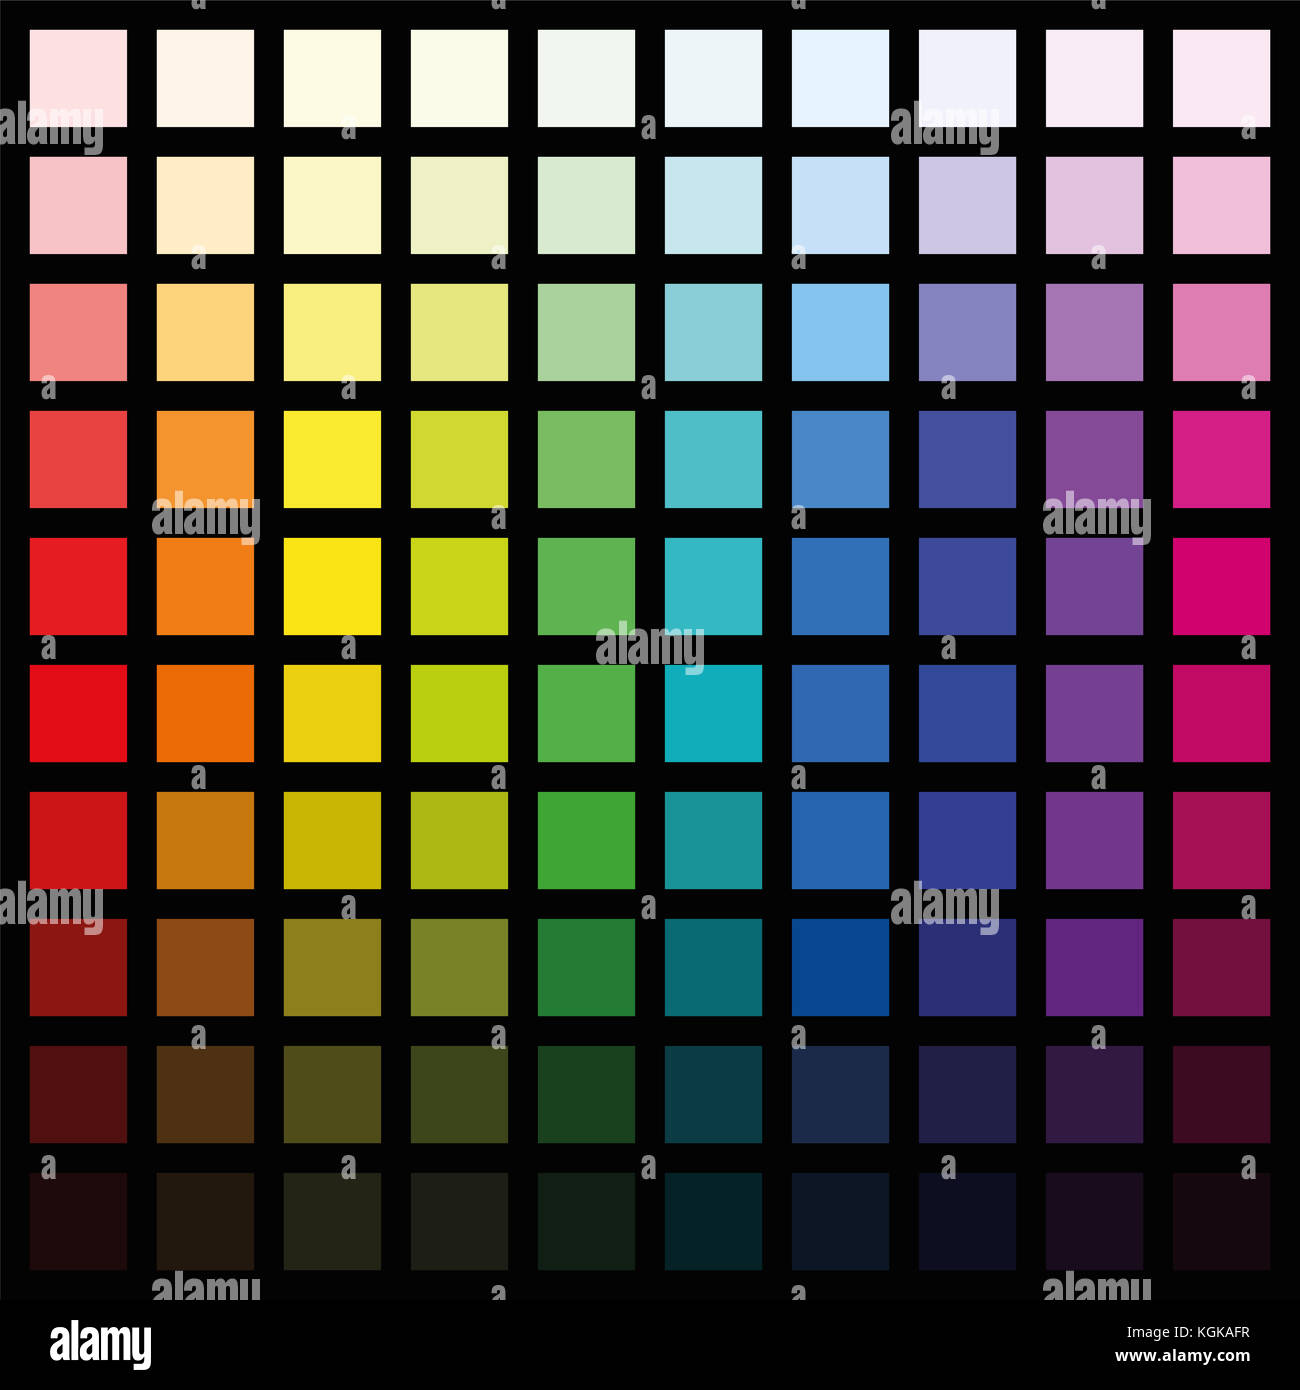 Hundert verschiedene farbige Quadrate - Farbe und Muster in verschiedenen Sättigung von hell bis dunkel - quadratische Format Abbildung auf Schwarz. Stockfoto